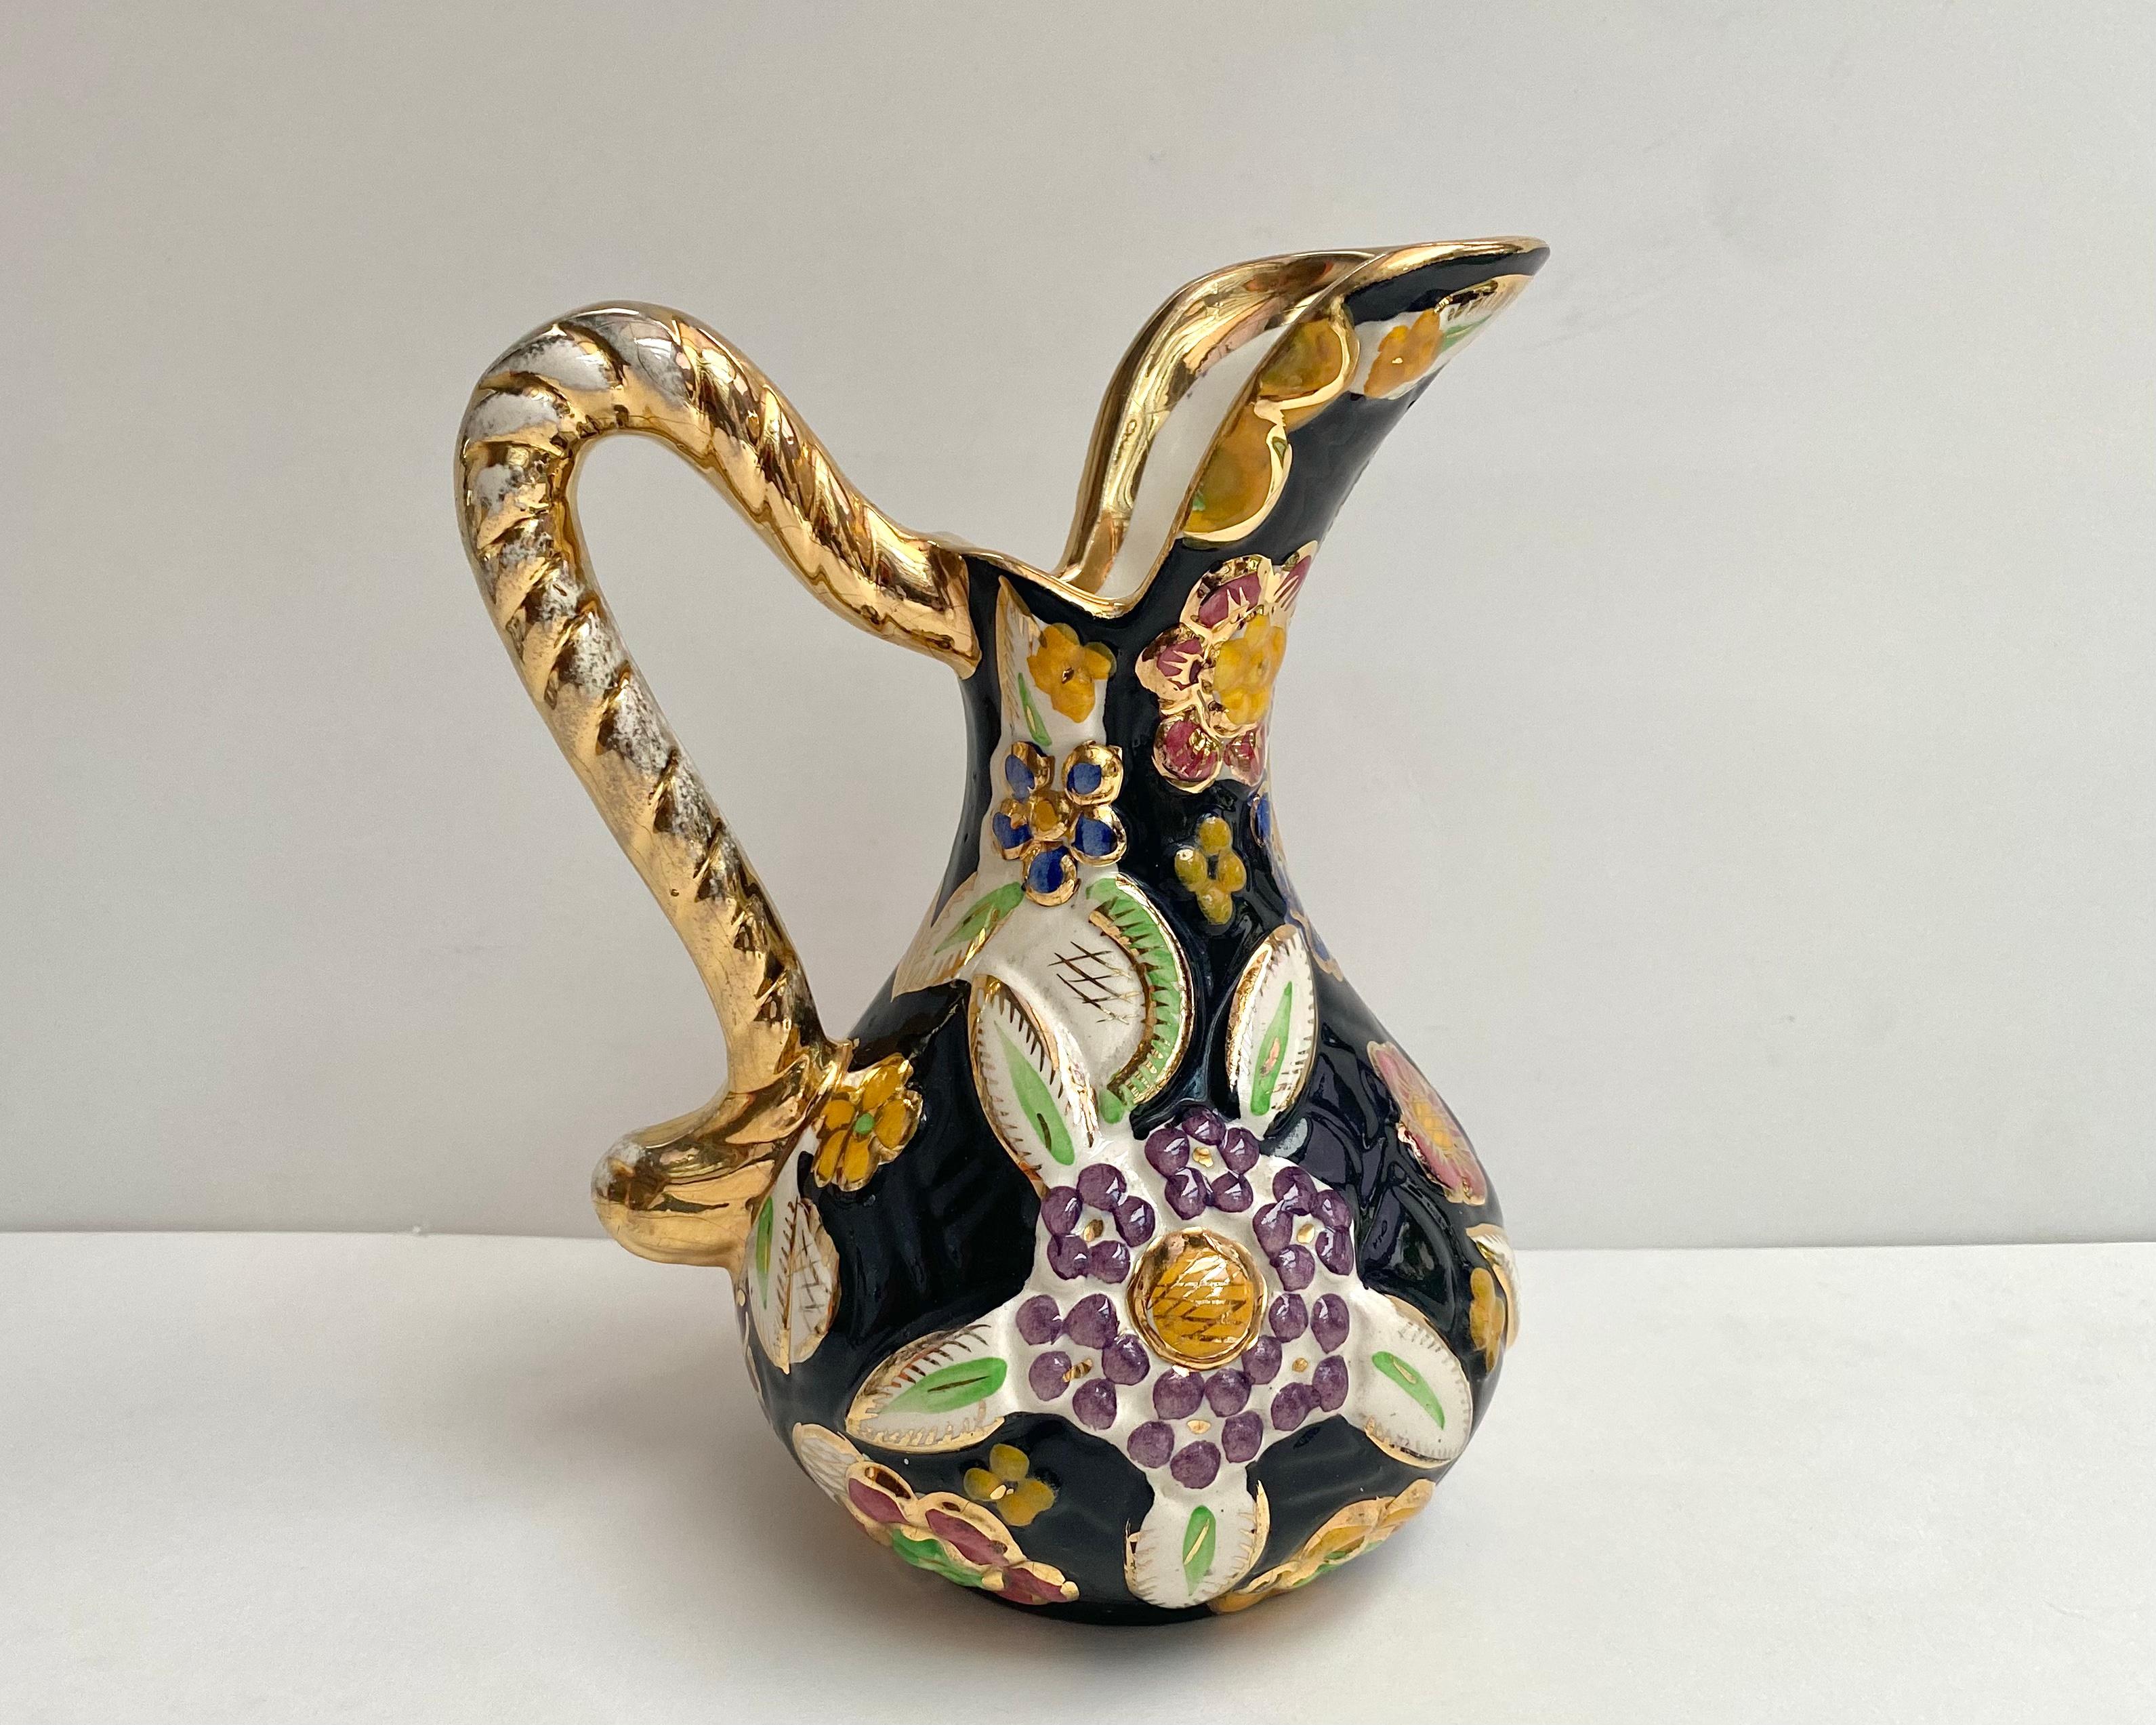 Aus den 1950er Jahren, zugeschrieben Hubert Bequet Quaregnon Keramik Krug / Vase mit einem schönen schwarzen Hintergrund mit einem hellen bunten erhabenen Emaille-Muster von einem bunten Blumen verziert.

u2028u2028Alles handgefertigt und